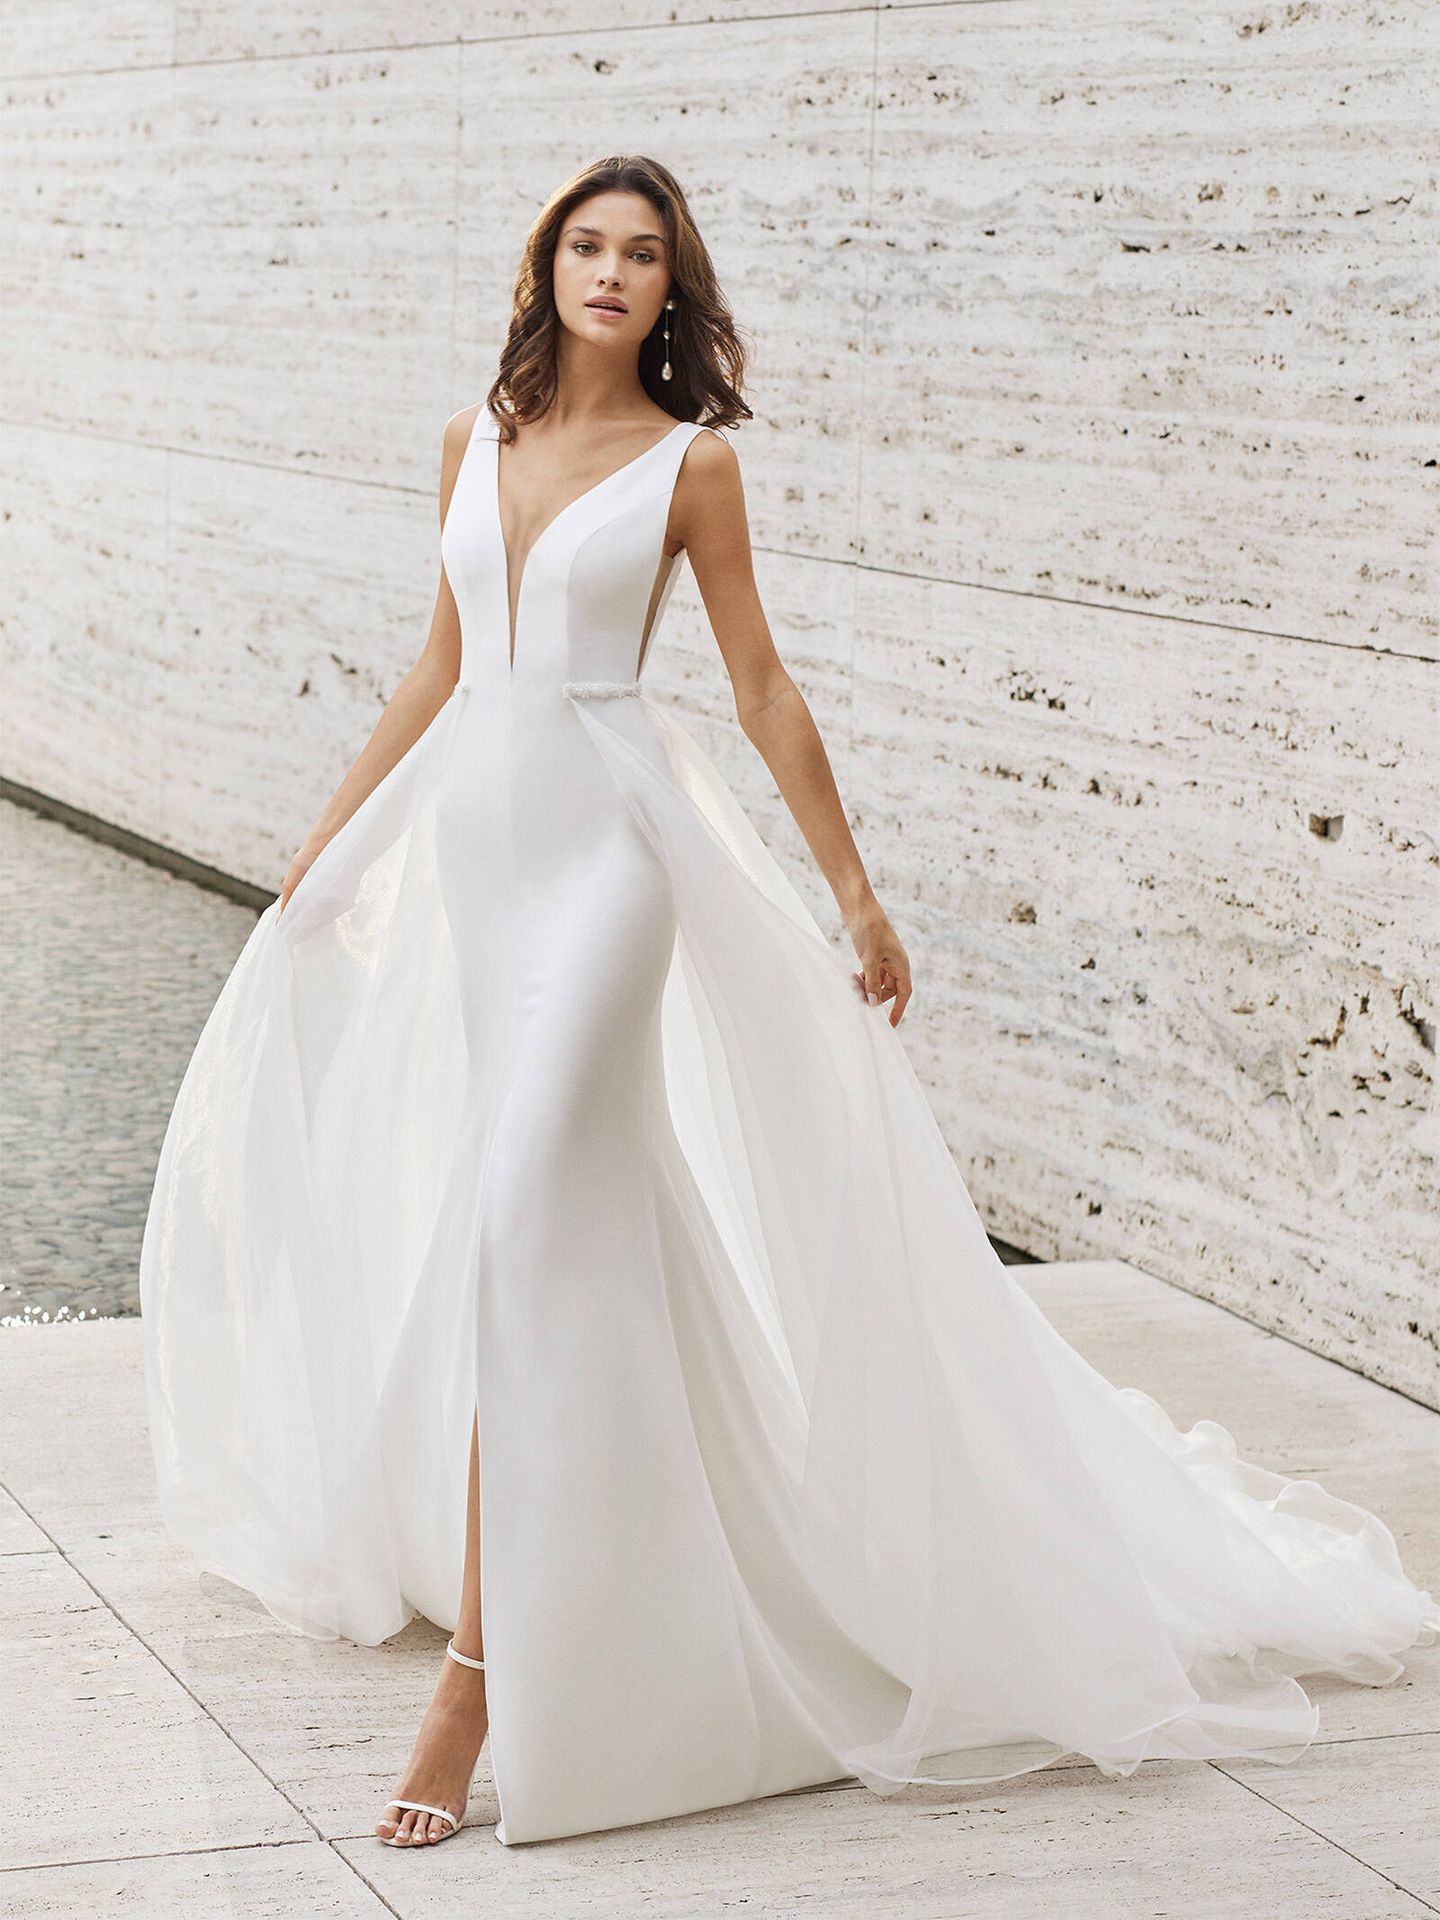 entrada Ir al circuito Goteo 5 impresionantes vestidos de novia de la nueva colección 2022 de Rosa Clará